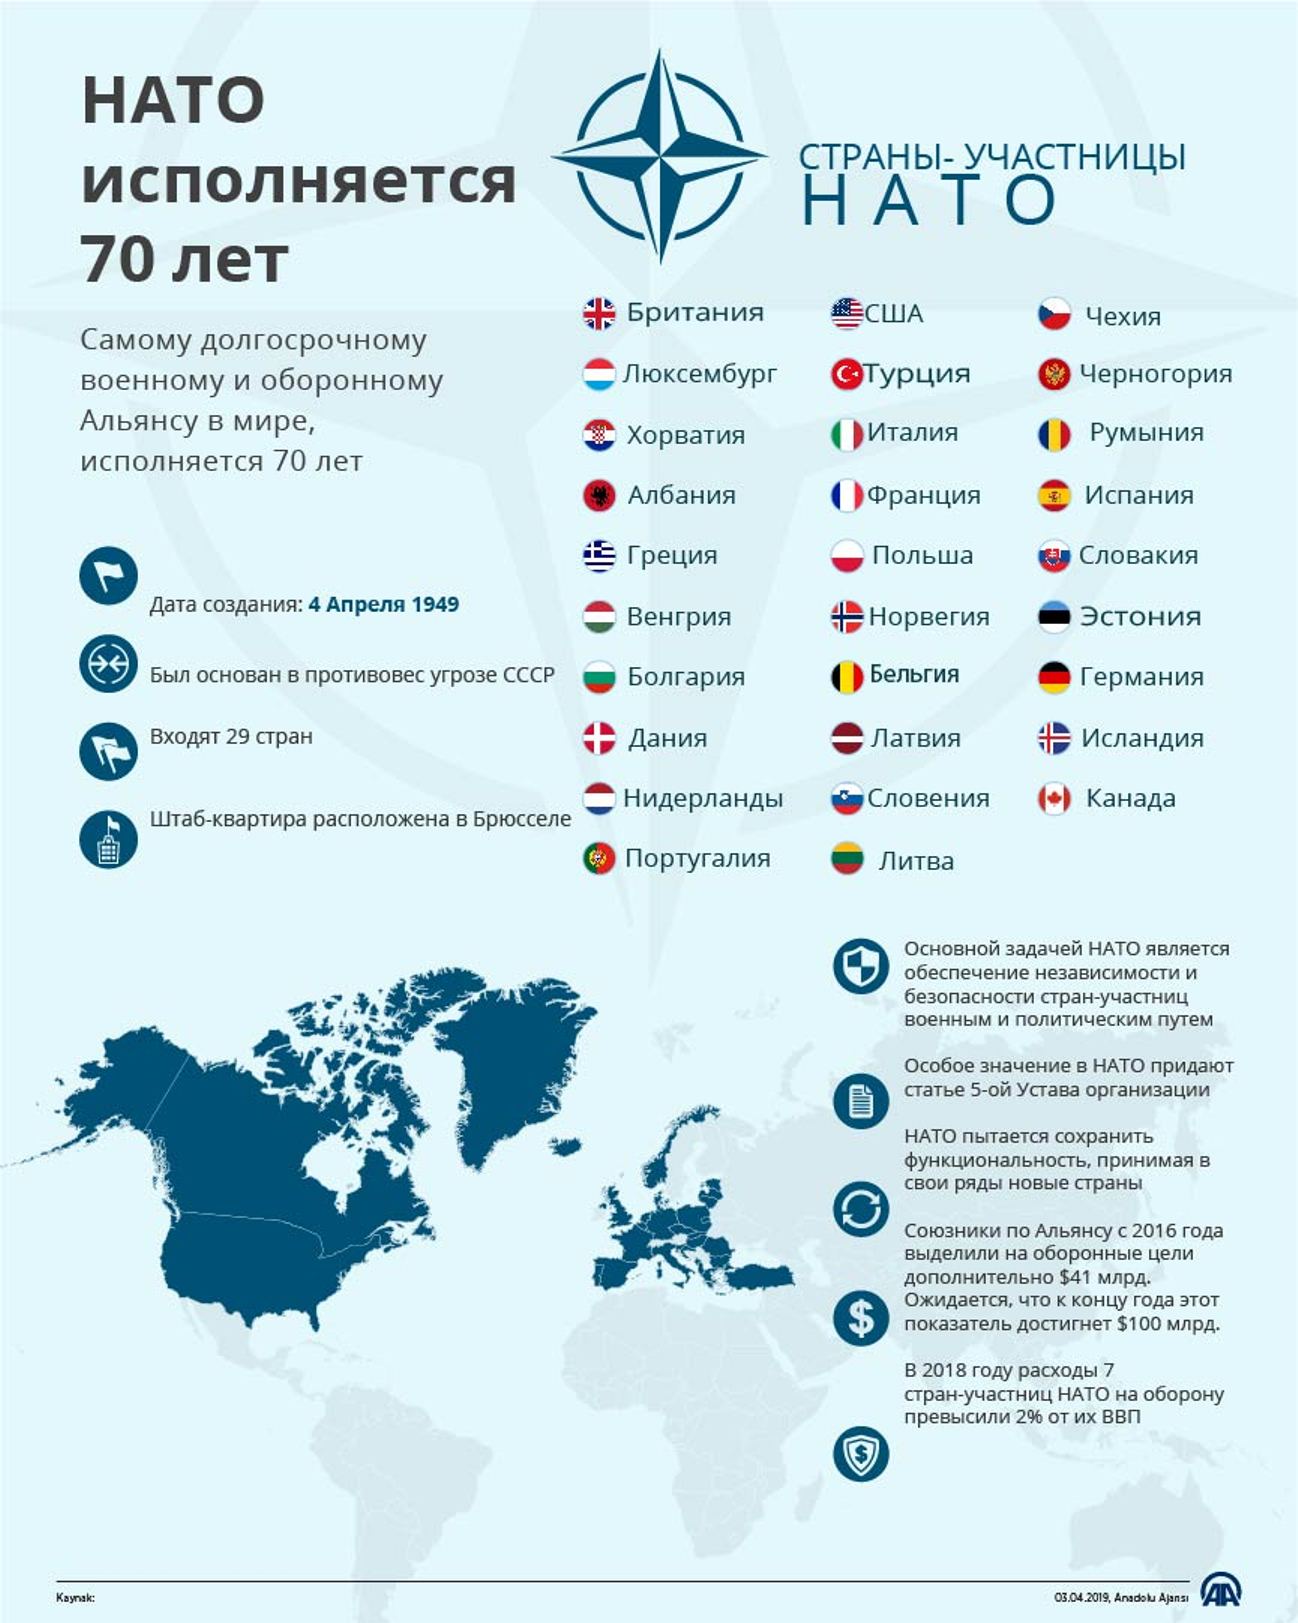 Участницы нато. Сколько стран входит в НАТО. Государства входящие в состав НАТО.